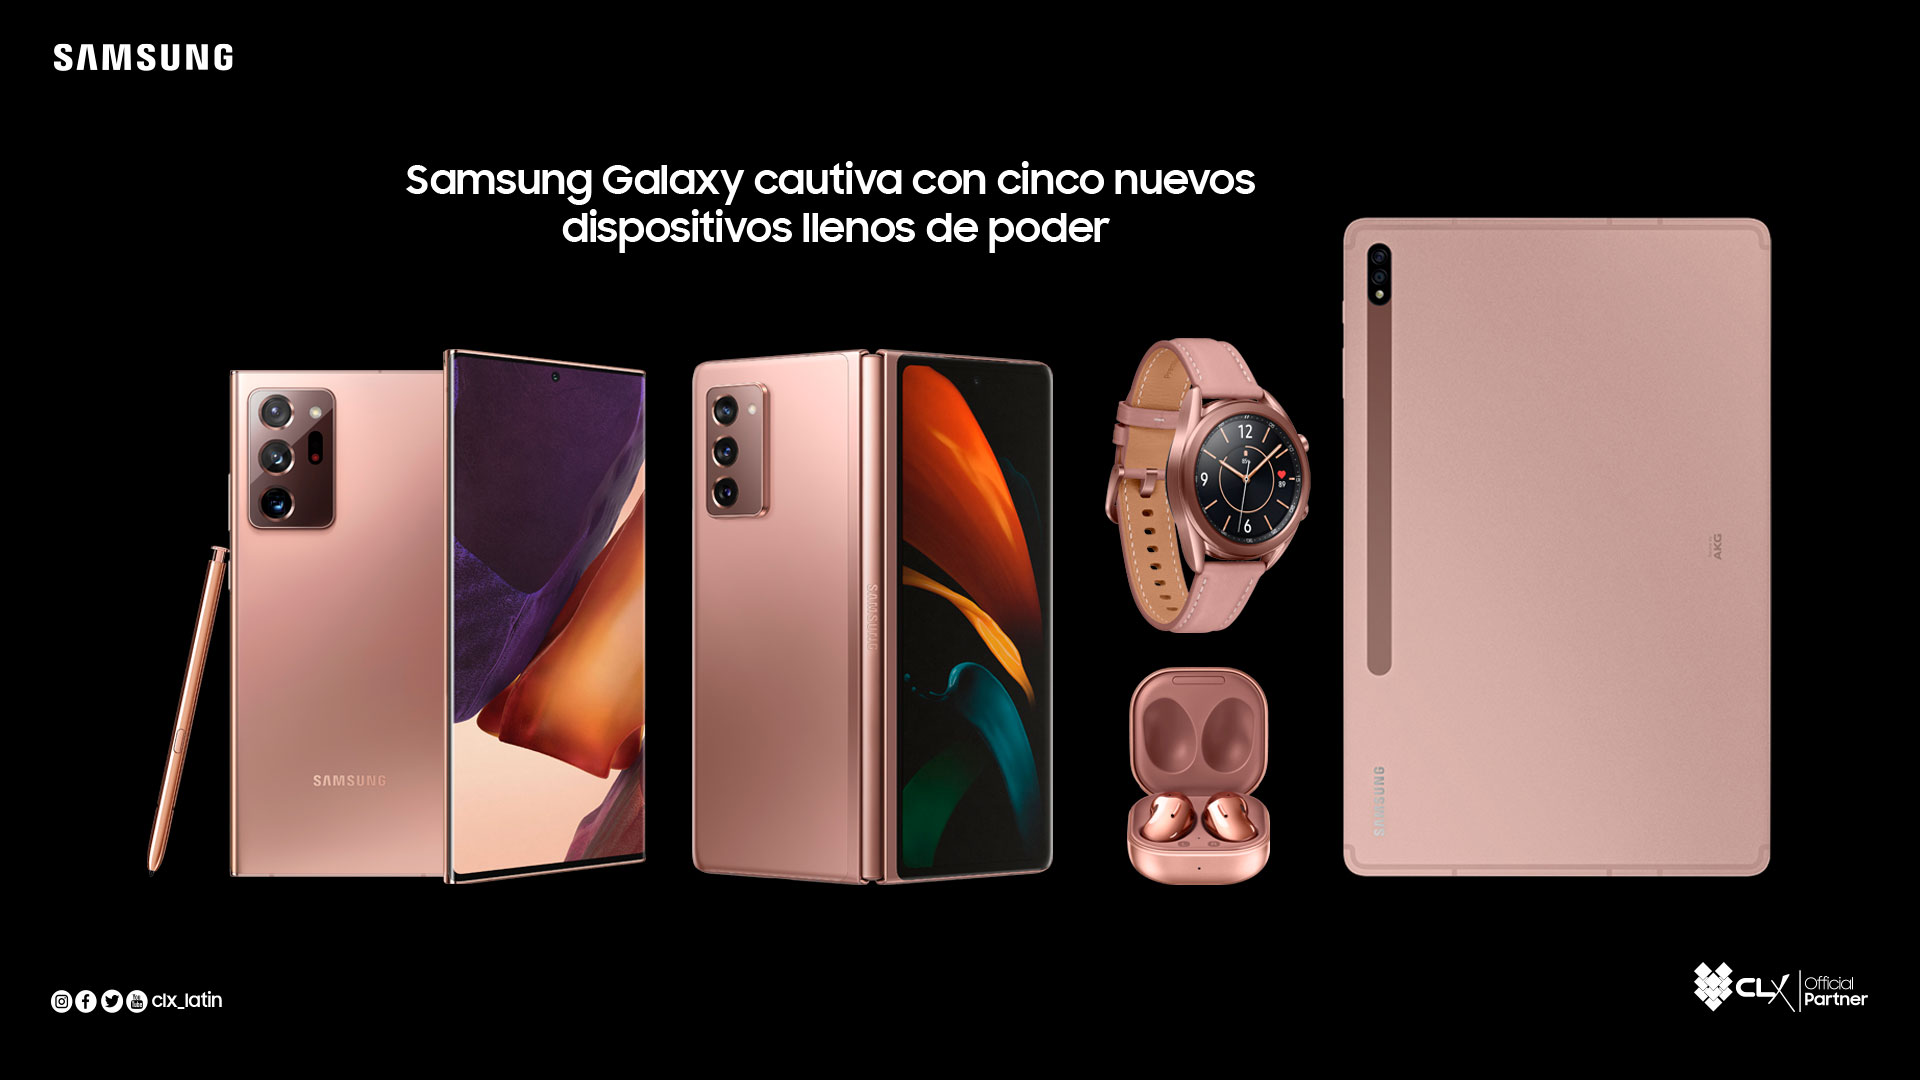 Samsung Galaxy cautiva con cinco nuevos dispositivos llenos de poder